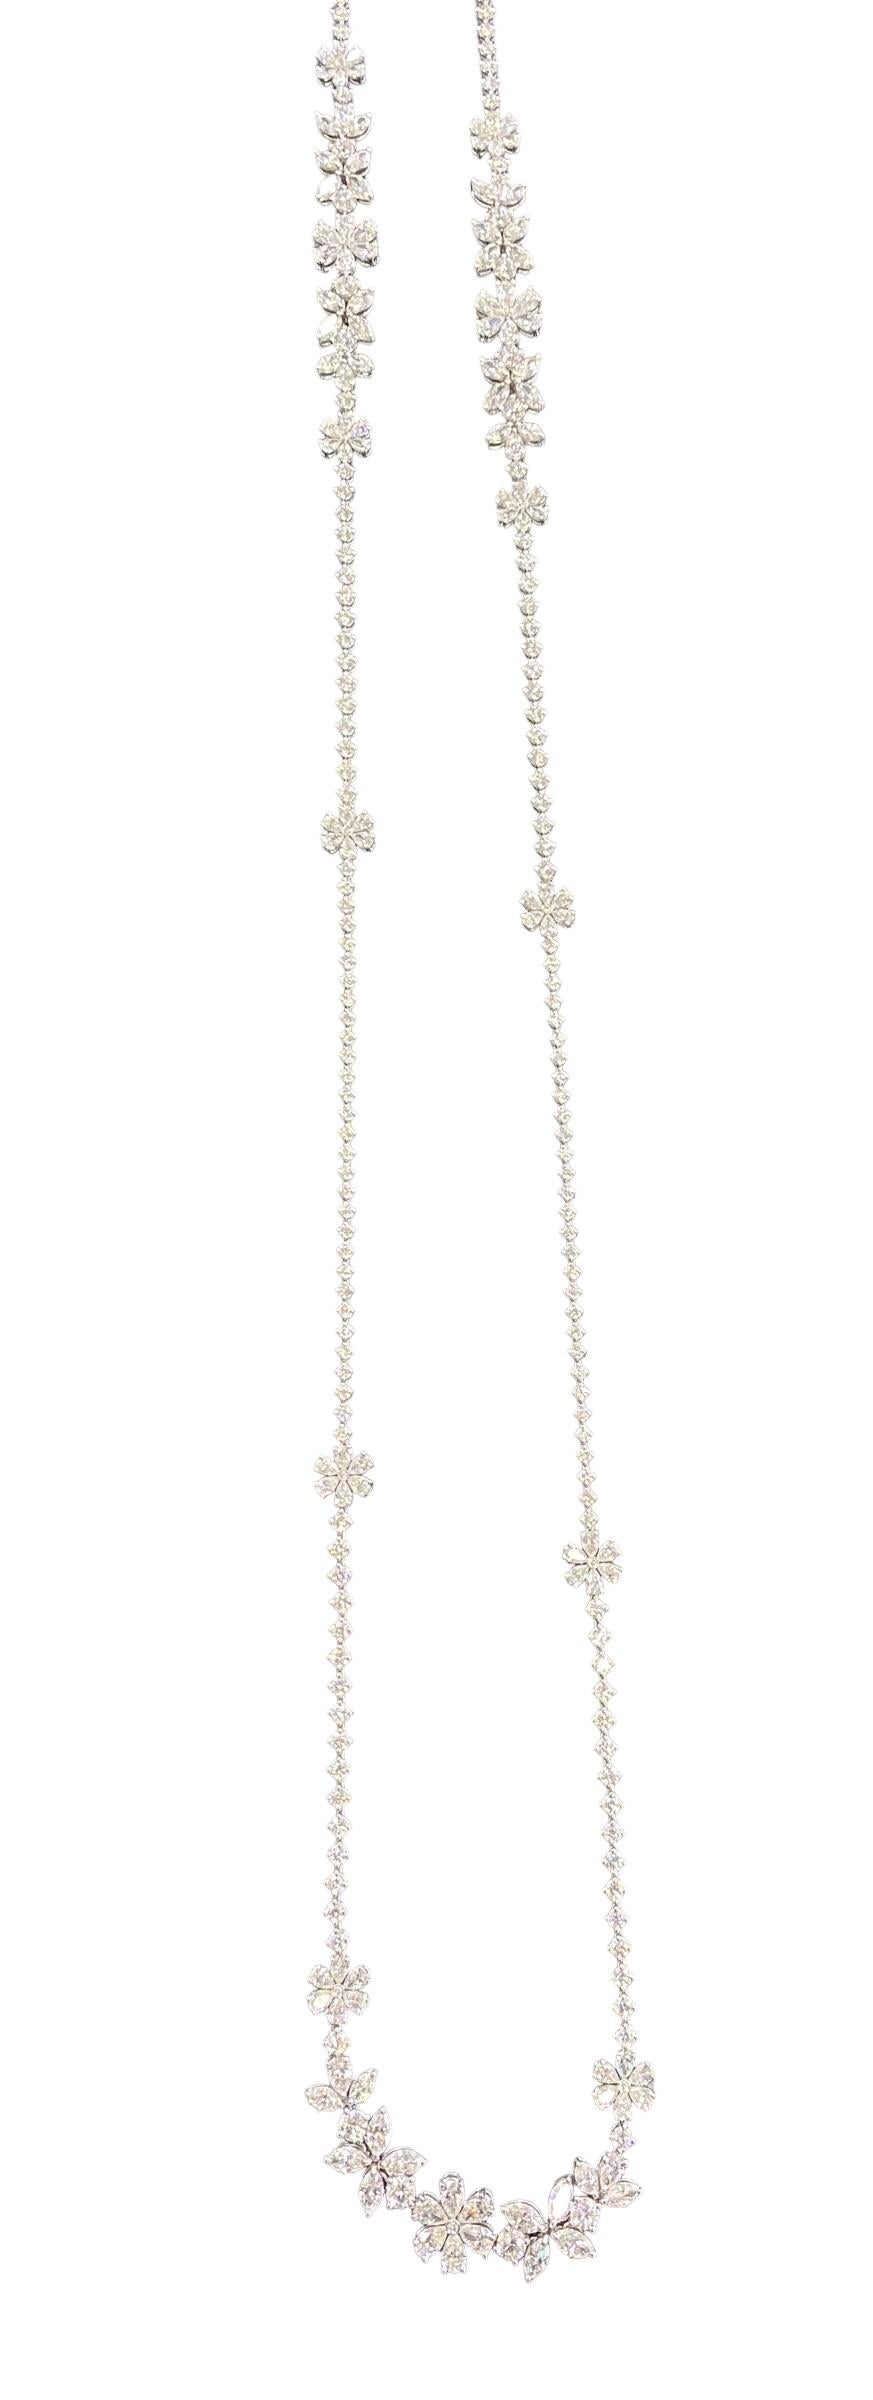 Zydo 18k Diamond Flower Necklace 27.28 Carats VS-F Color 3